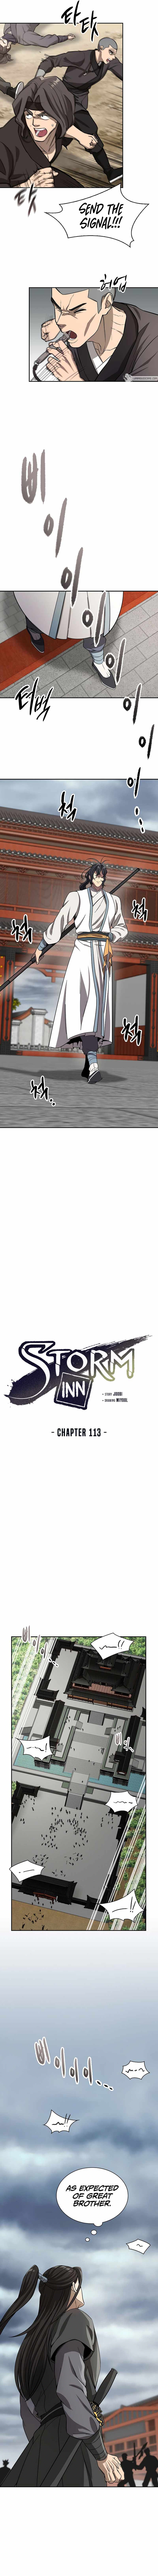 Storm Inn chapter 113